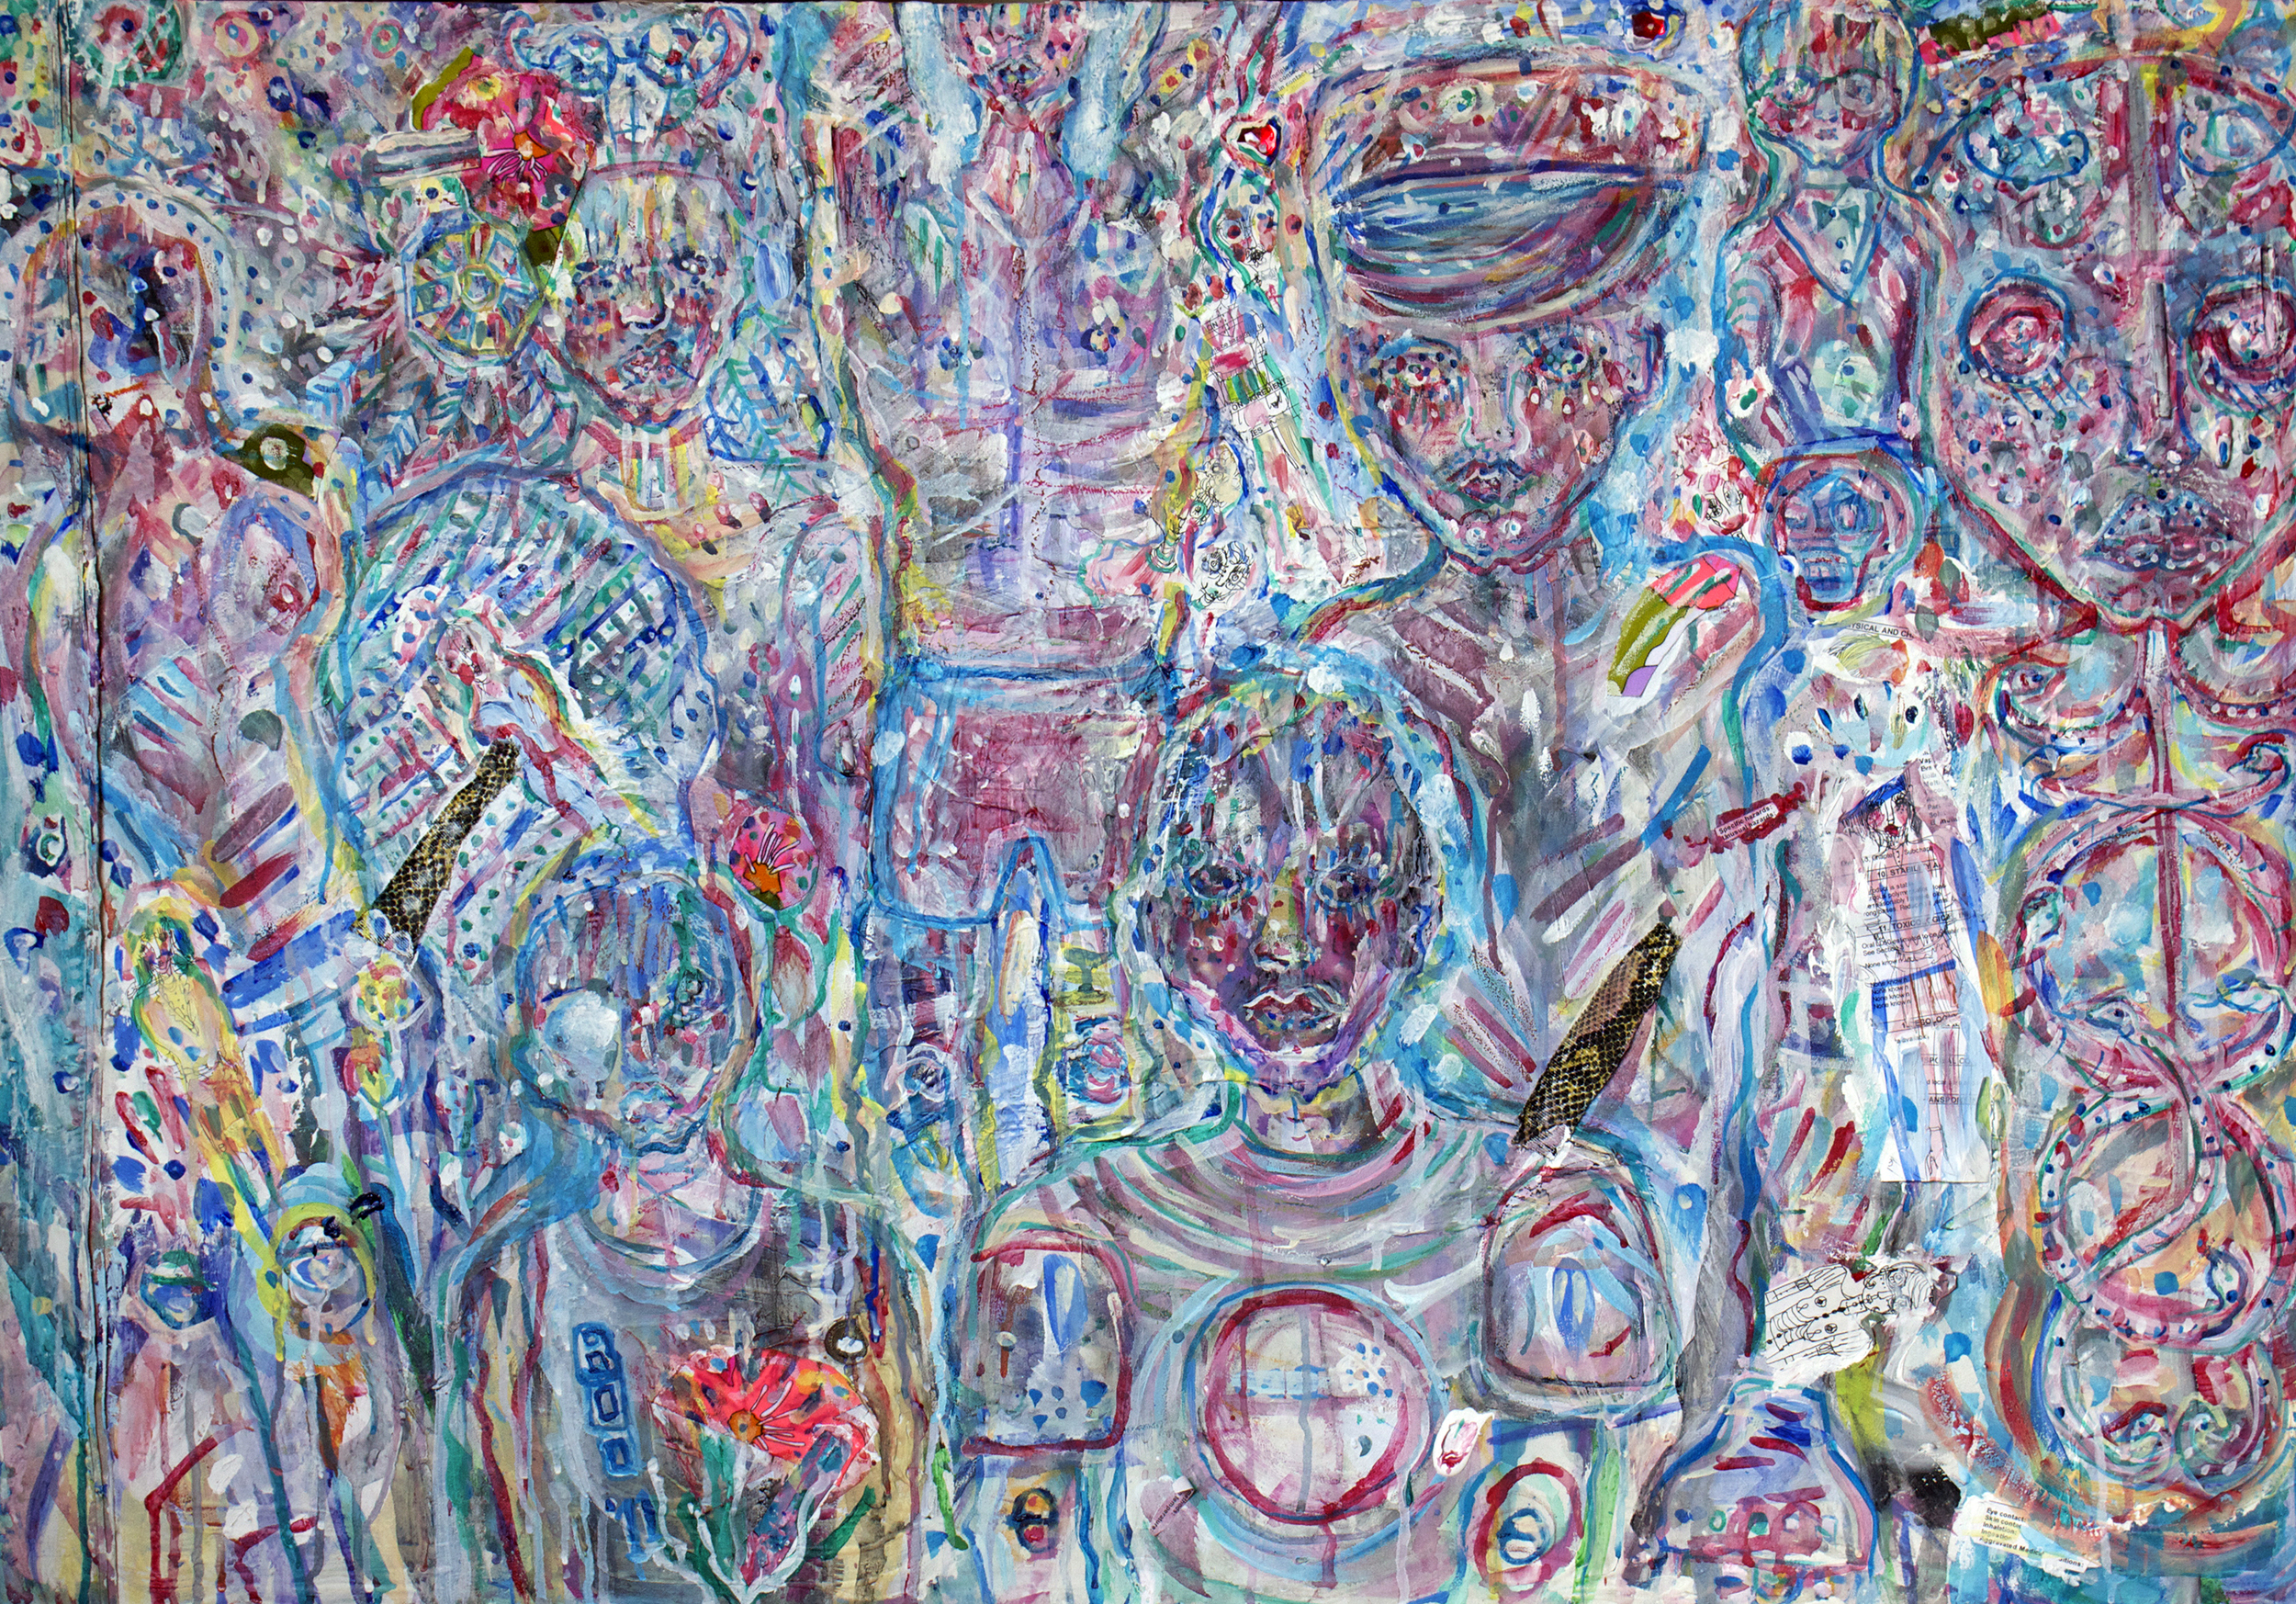 VillagePeeps, mixed media on canvas, 2.5x3.5ft, 2011